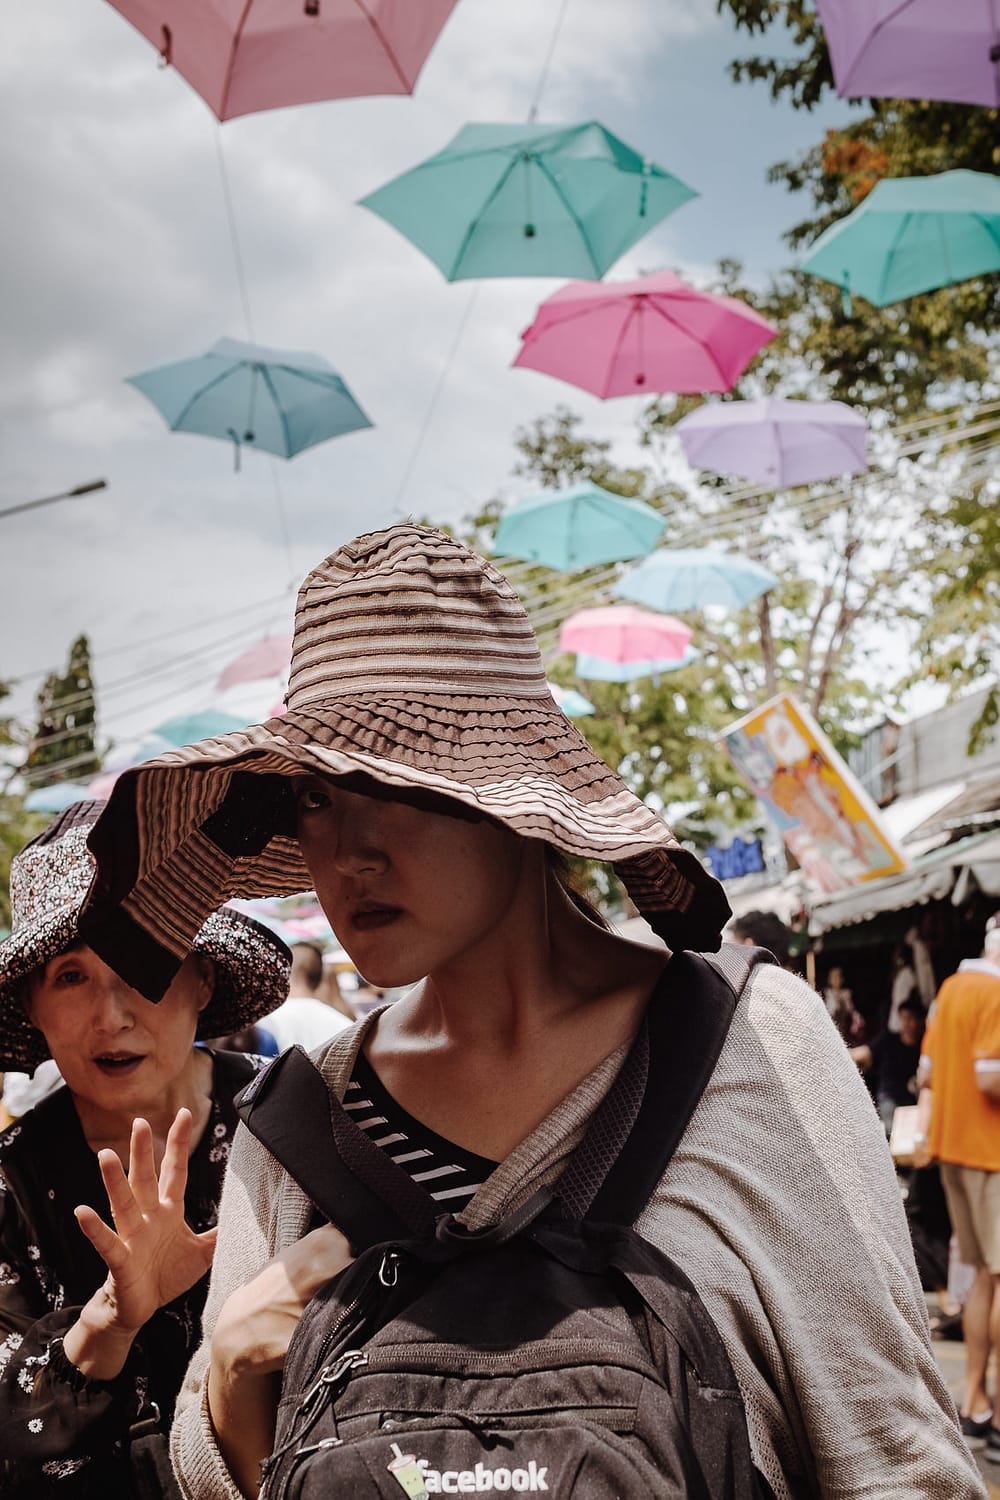 Bangkok's Chatuchak Market, September 2018